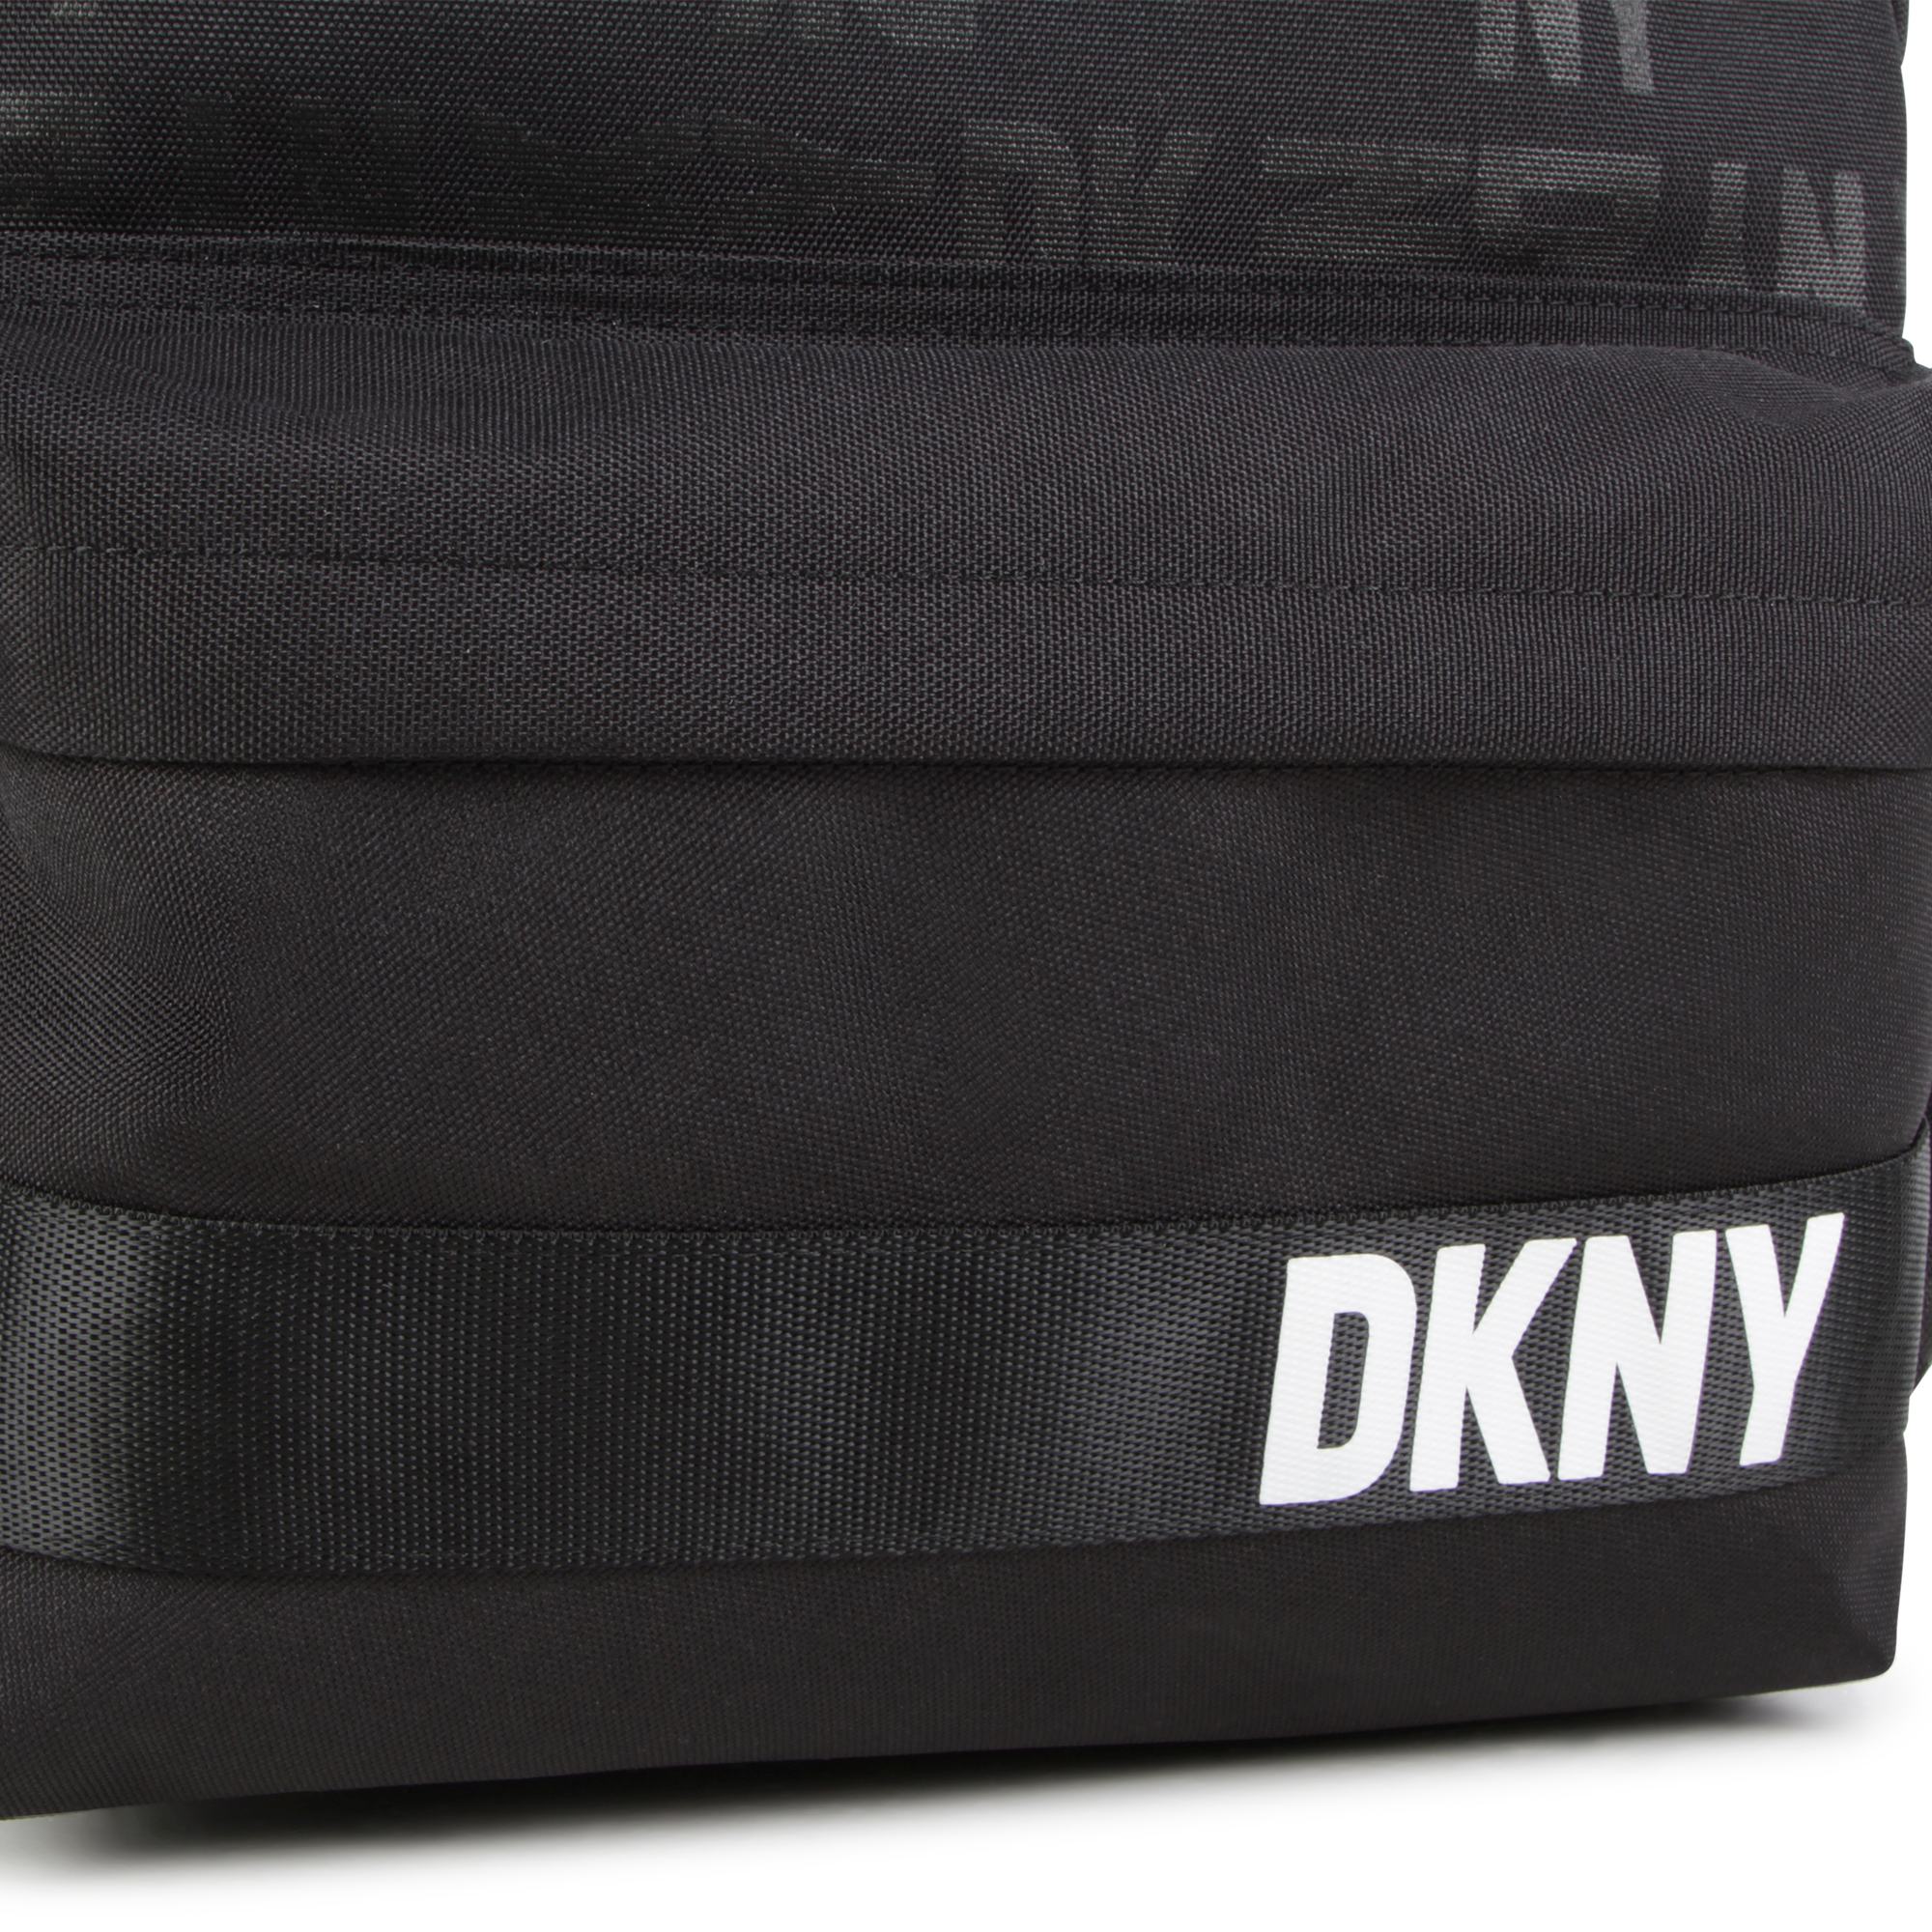 Rucksack mit Print-Logo DKNY Für UNISEX